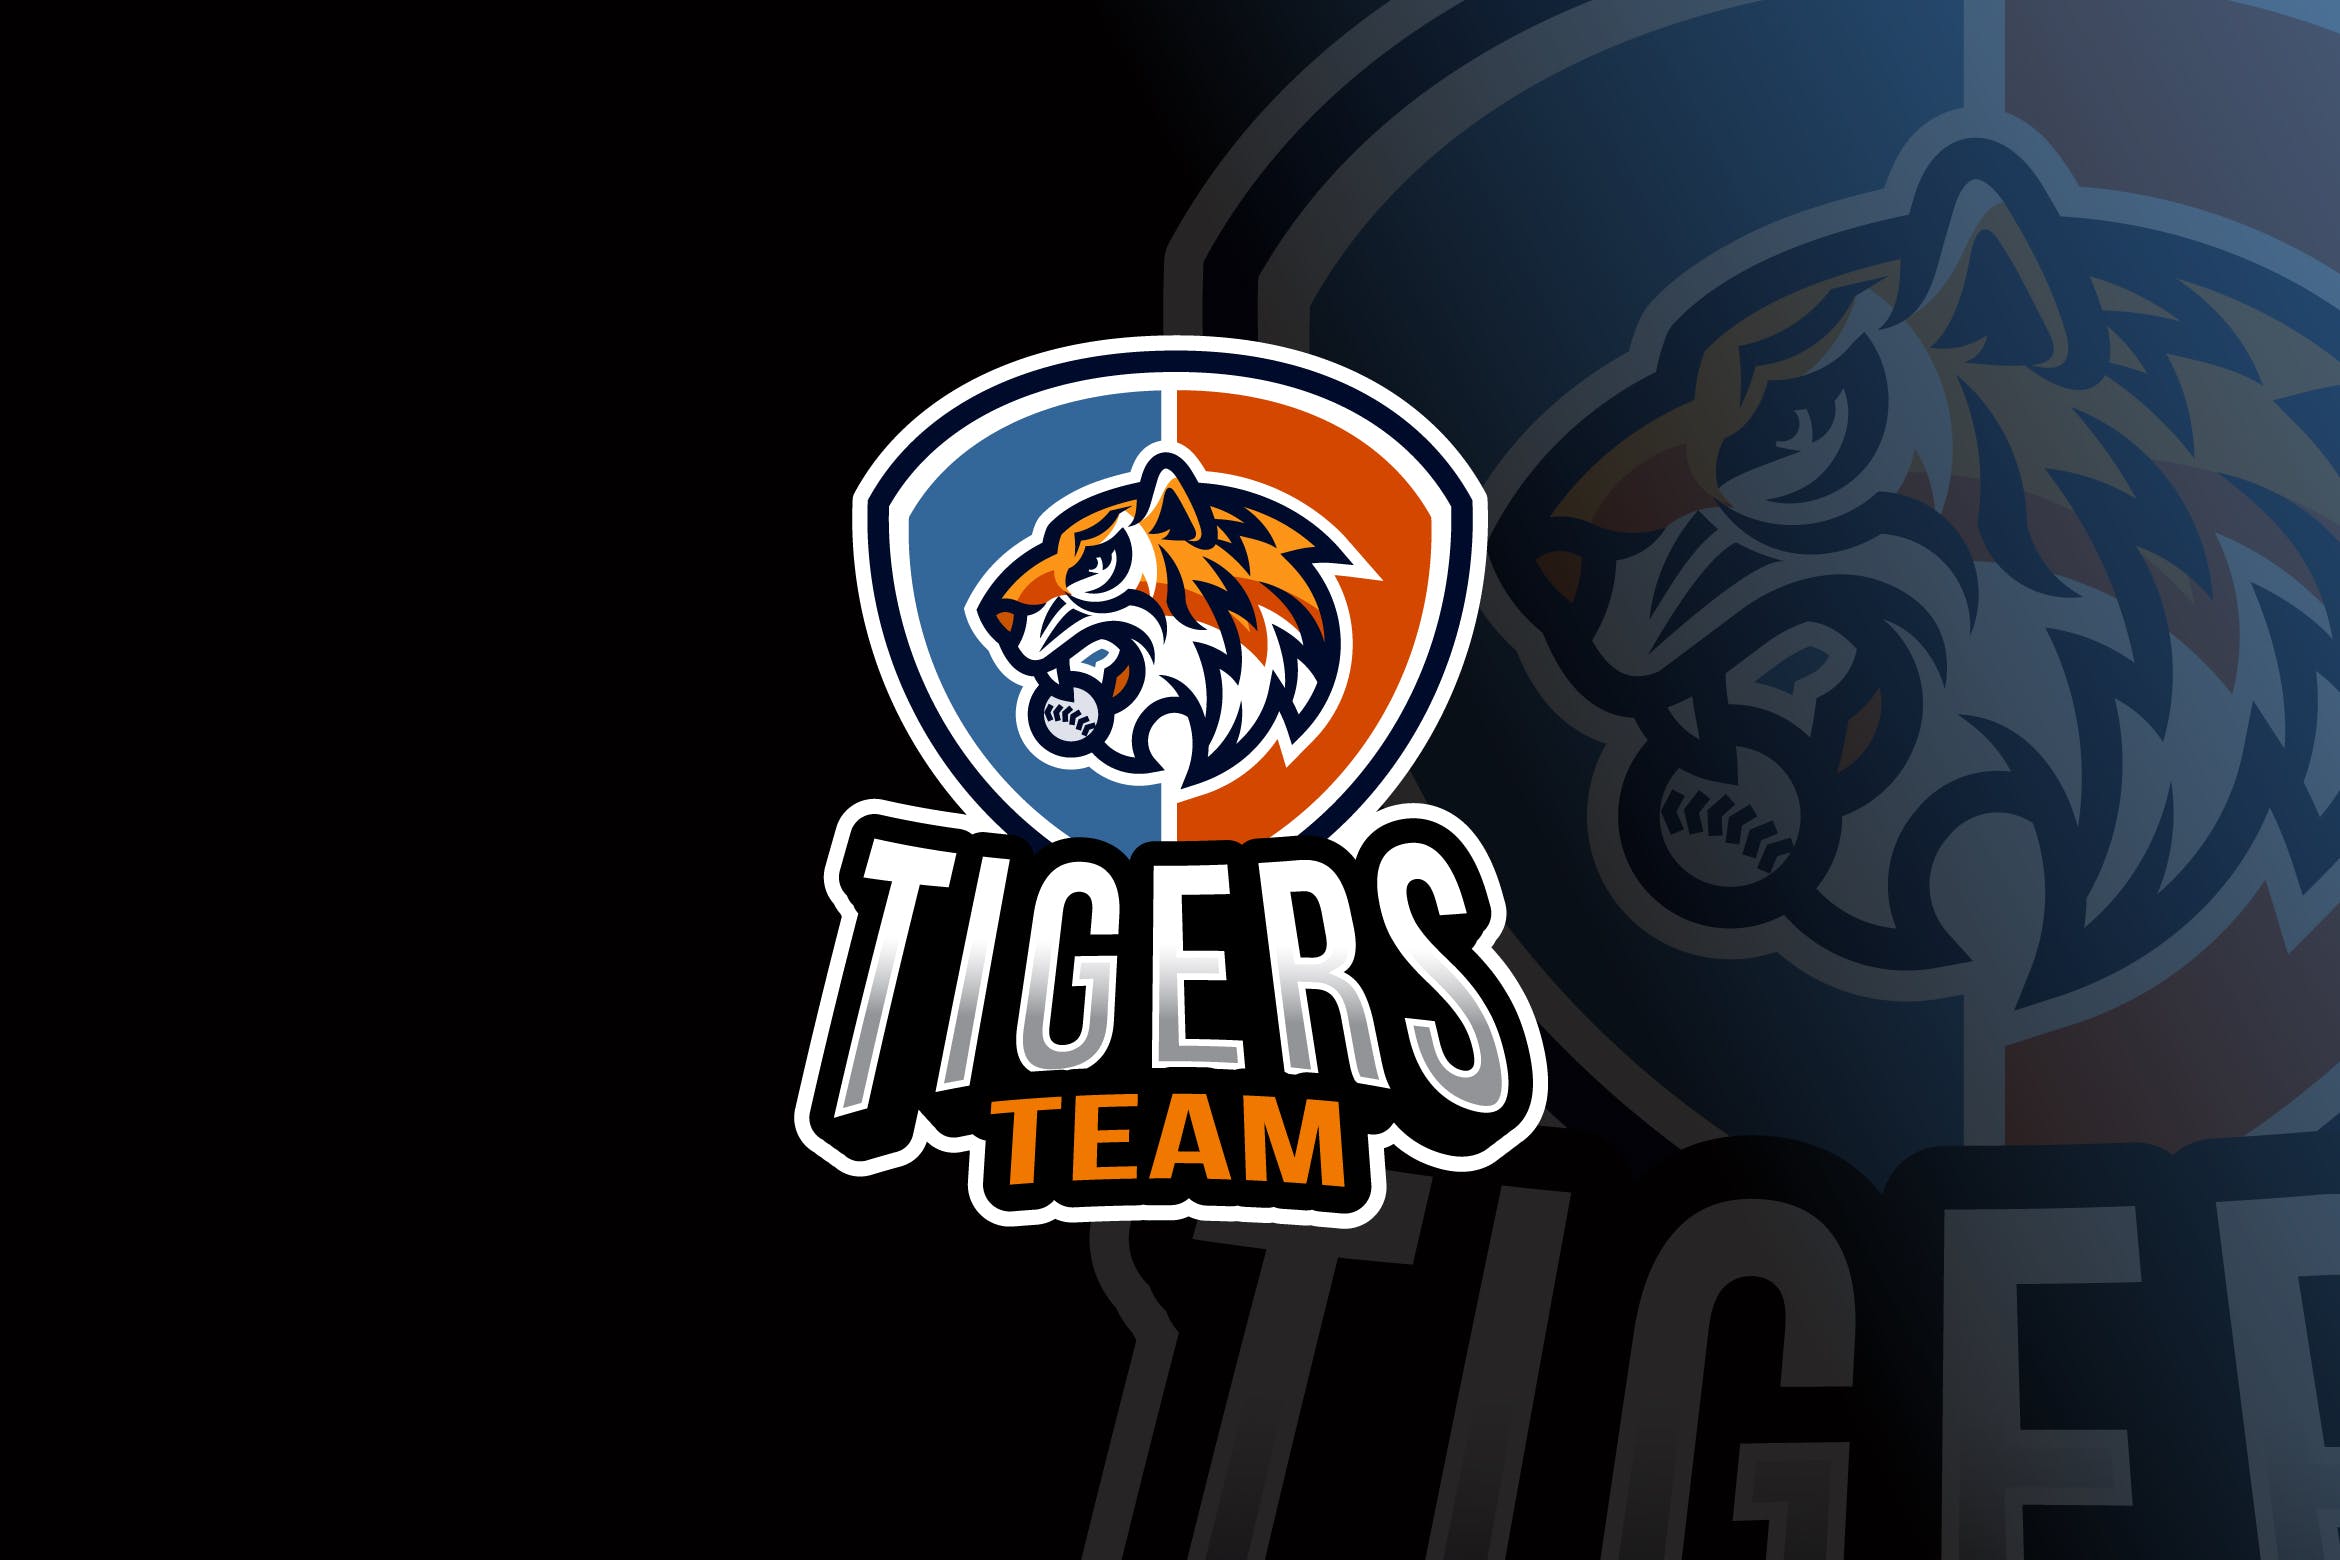 老虎卡通形象篮球队队徽图案Logo设计模板 Tigers Baseball Logo Template插图